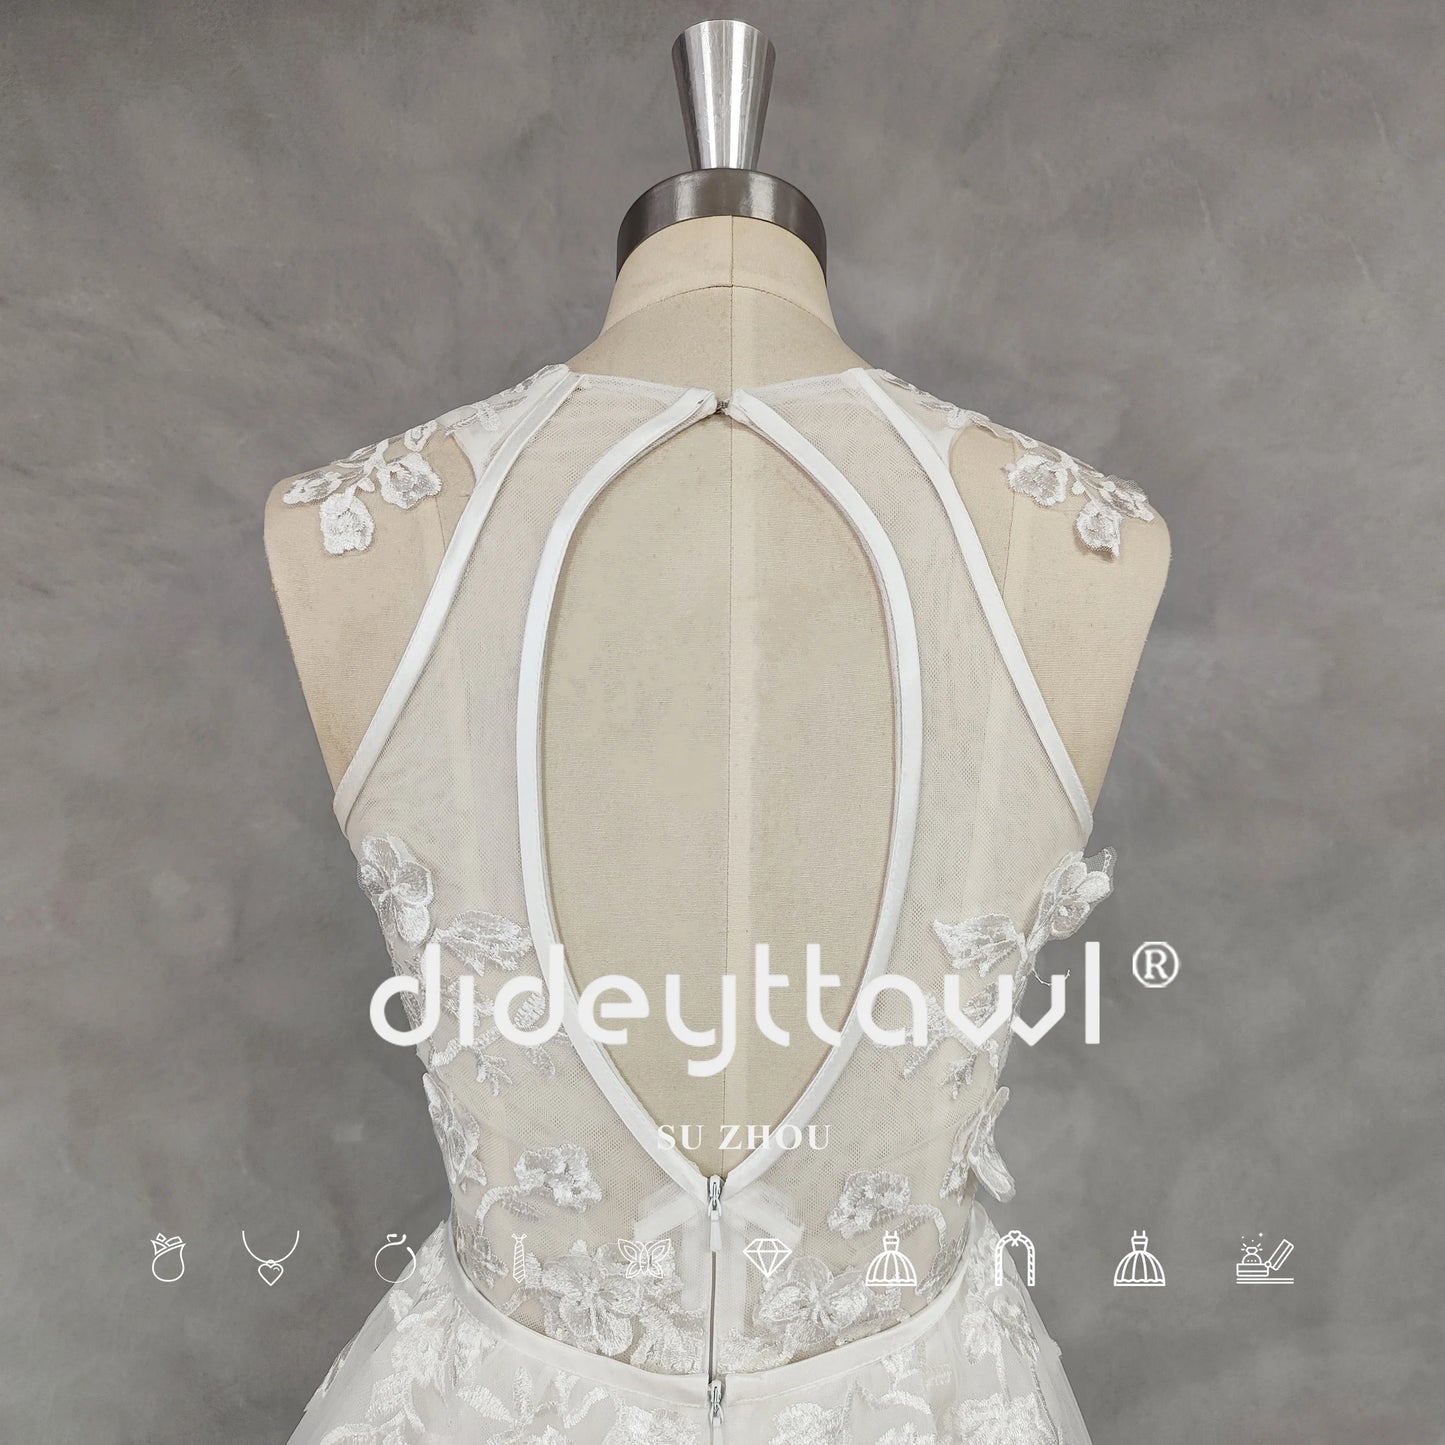 O-Neck-Applikationen Scheide Kurzes Hochzeitskleid abnehmbarer Zug aus dem Knie Mini Brautkleid aus dem Knie herausgeschnitten